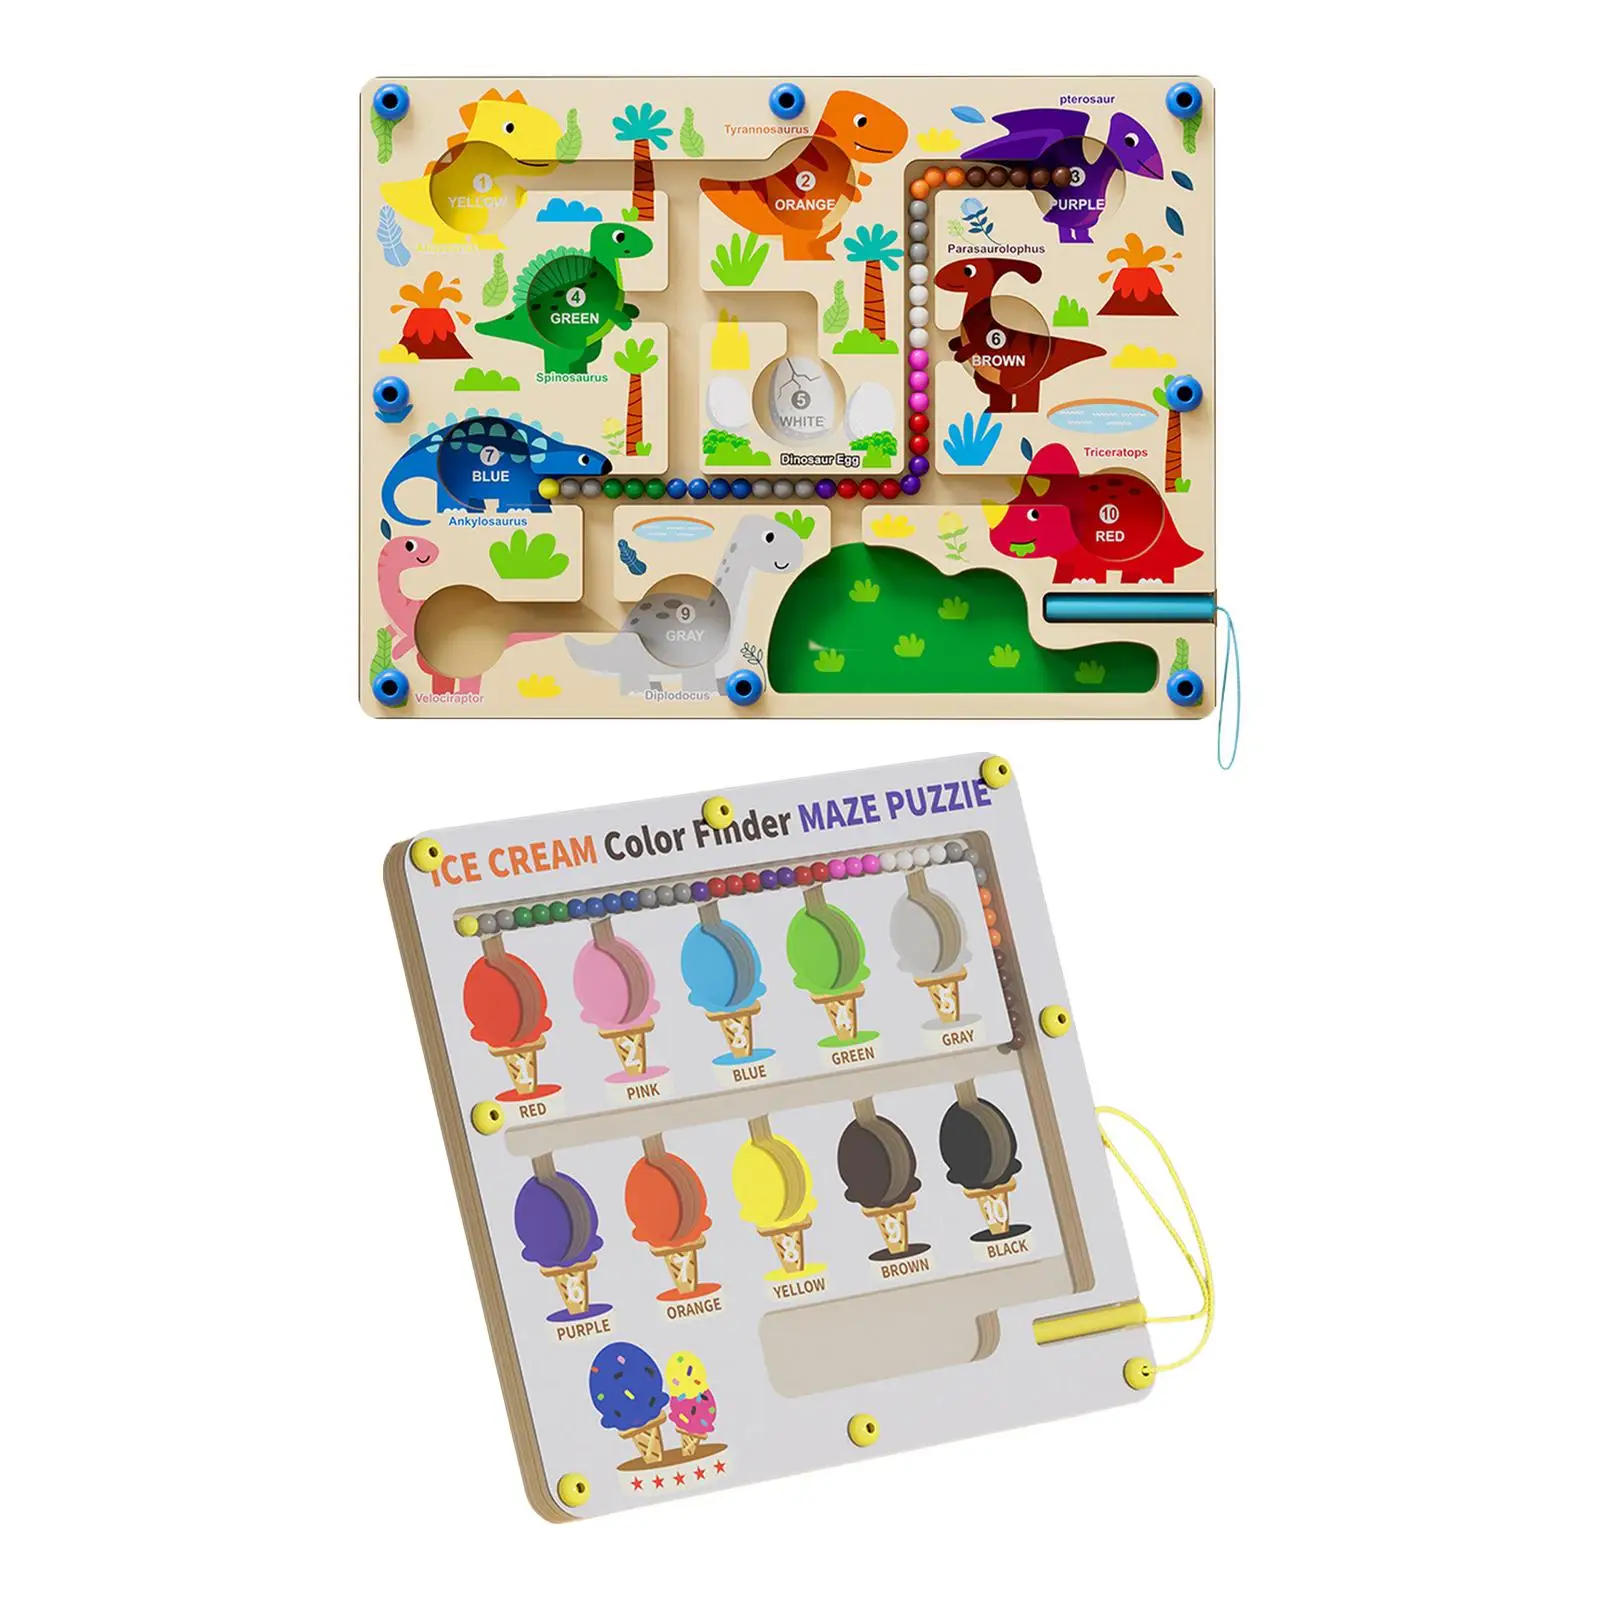 

Магнитный лабиринт с цветными цифрами, Интерактивная деревянная магнитная головоломка, игровая доска для детей, девочек, мальчиков, малышей, детей